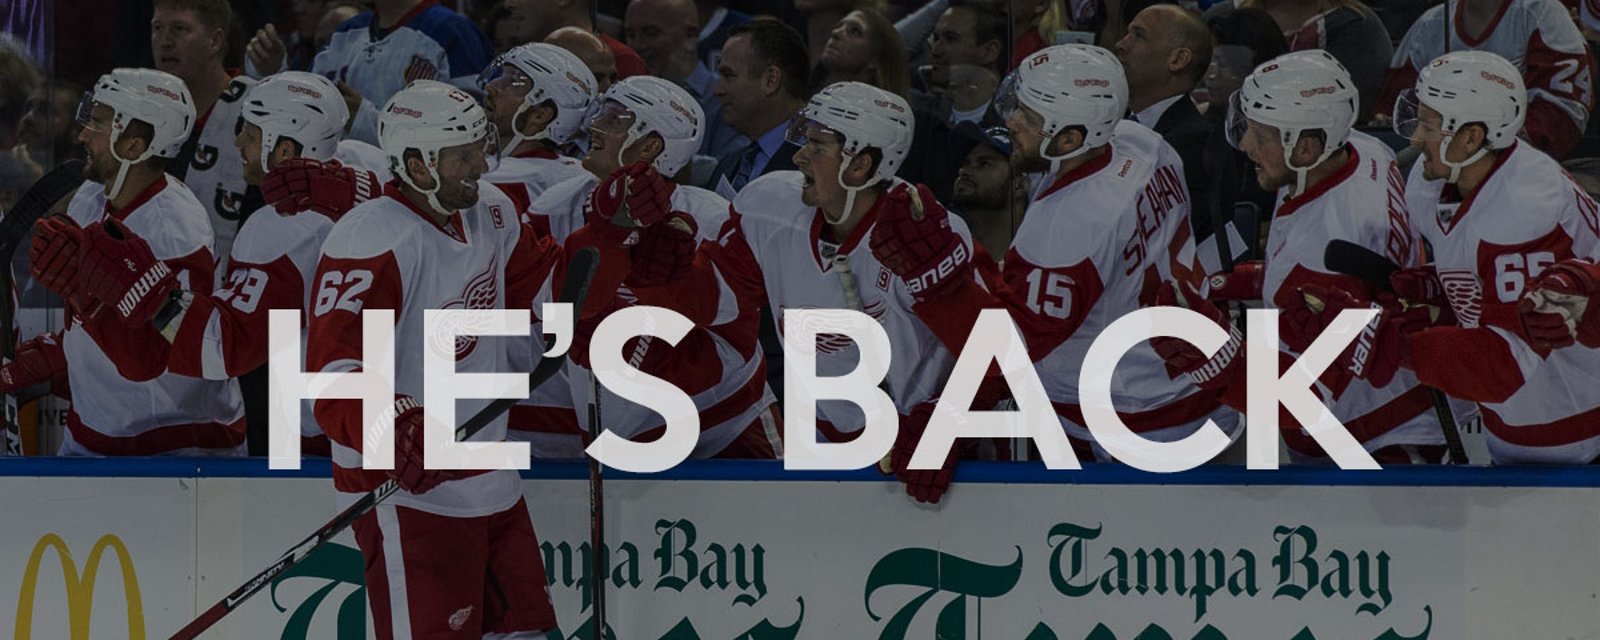 Long-awaited return for Detroit!